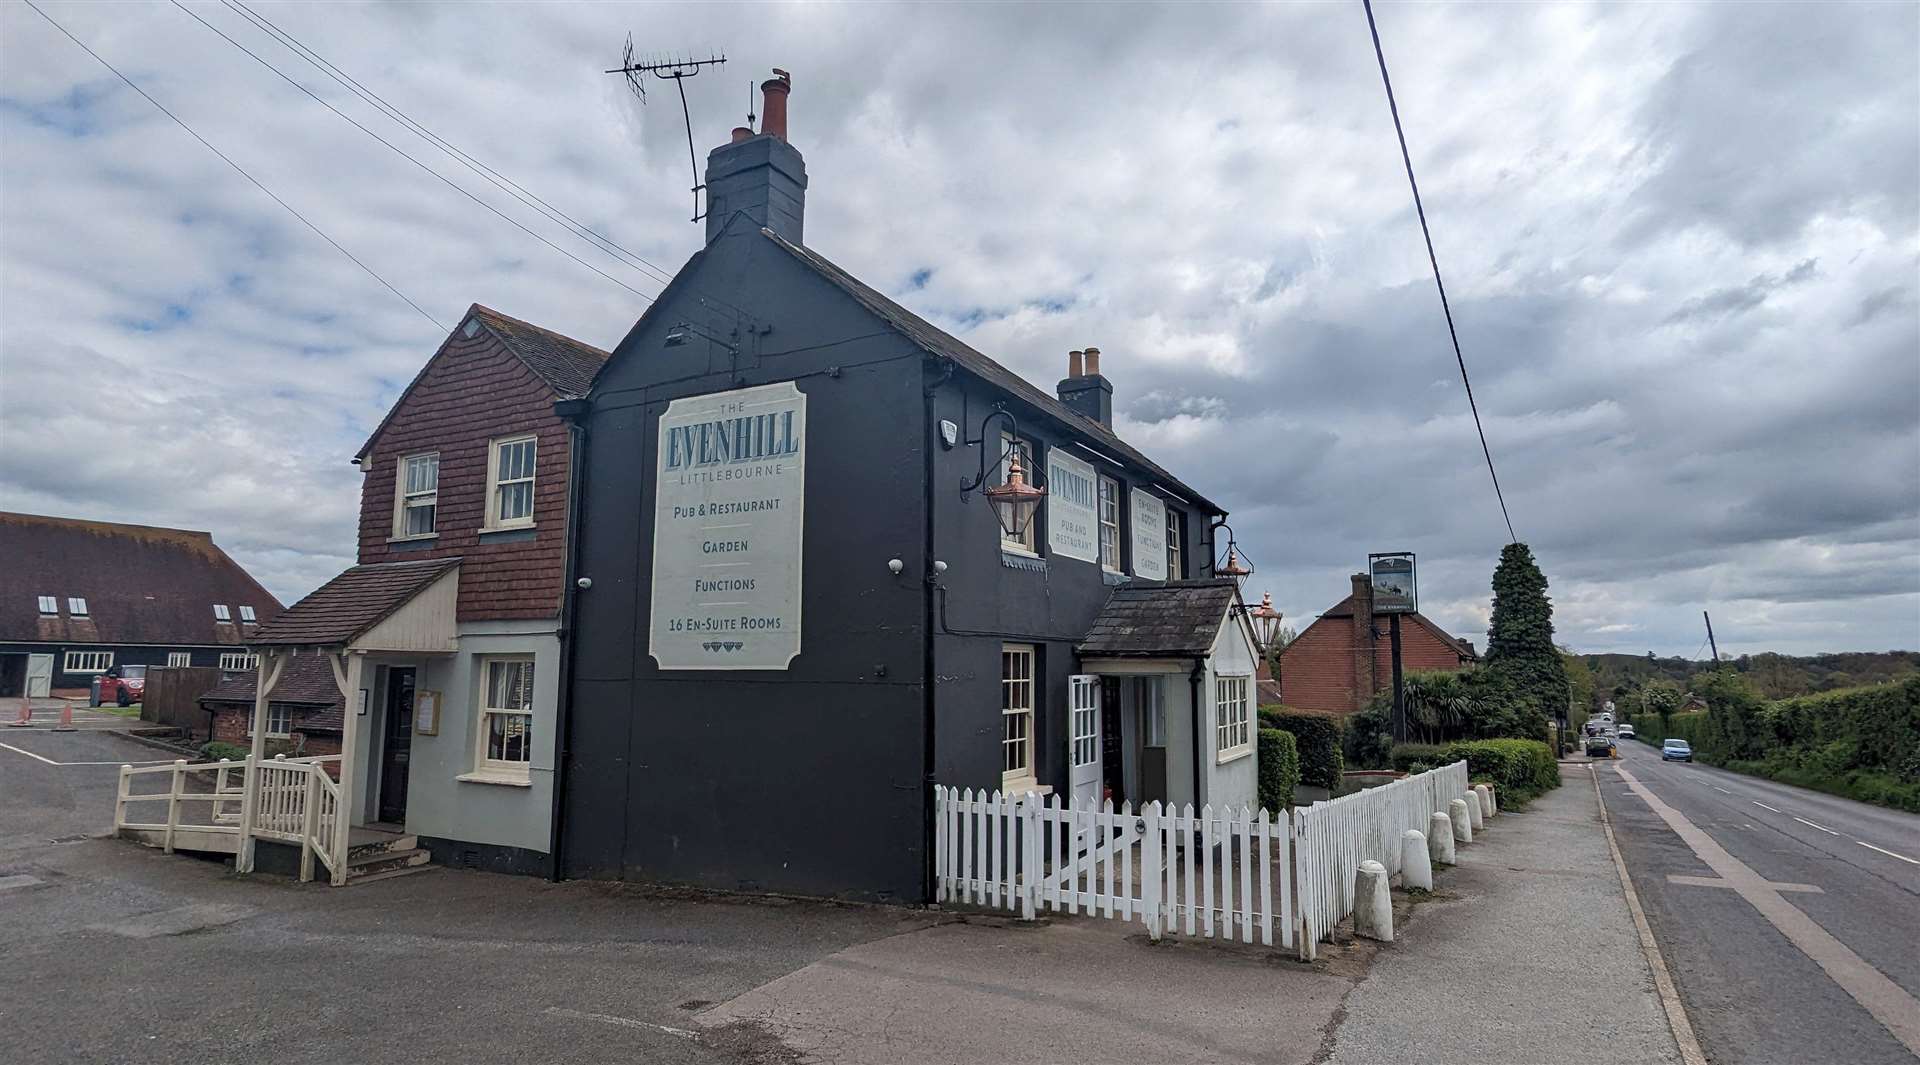 The Evenhill pub at Littlebourne